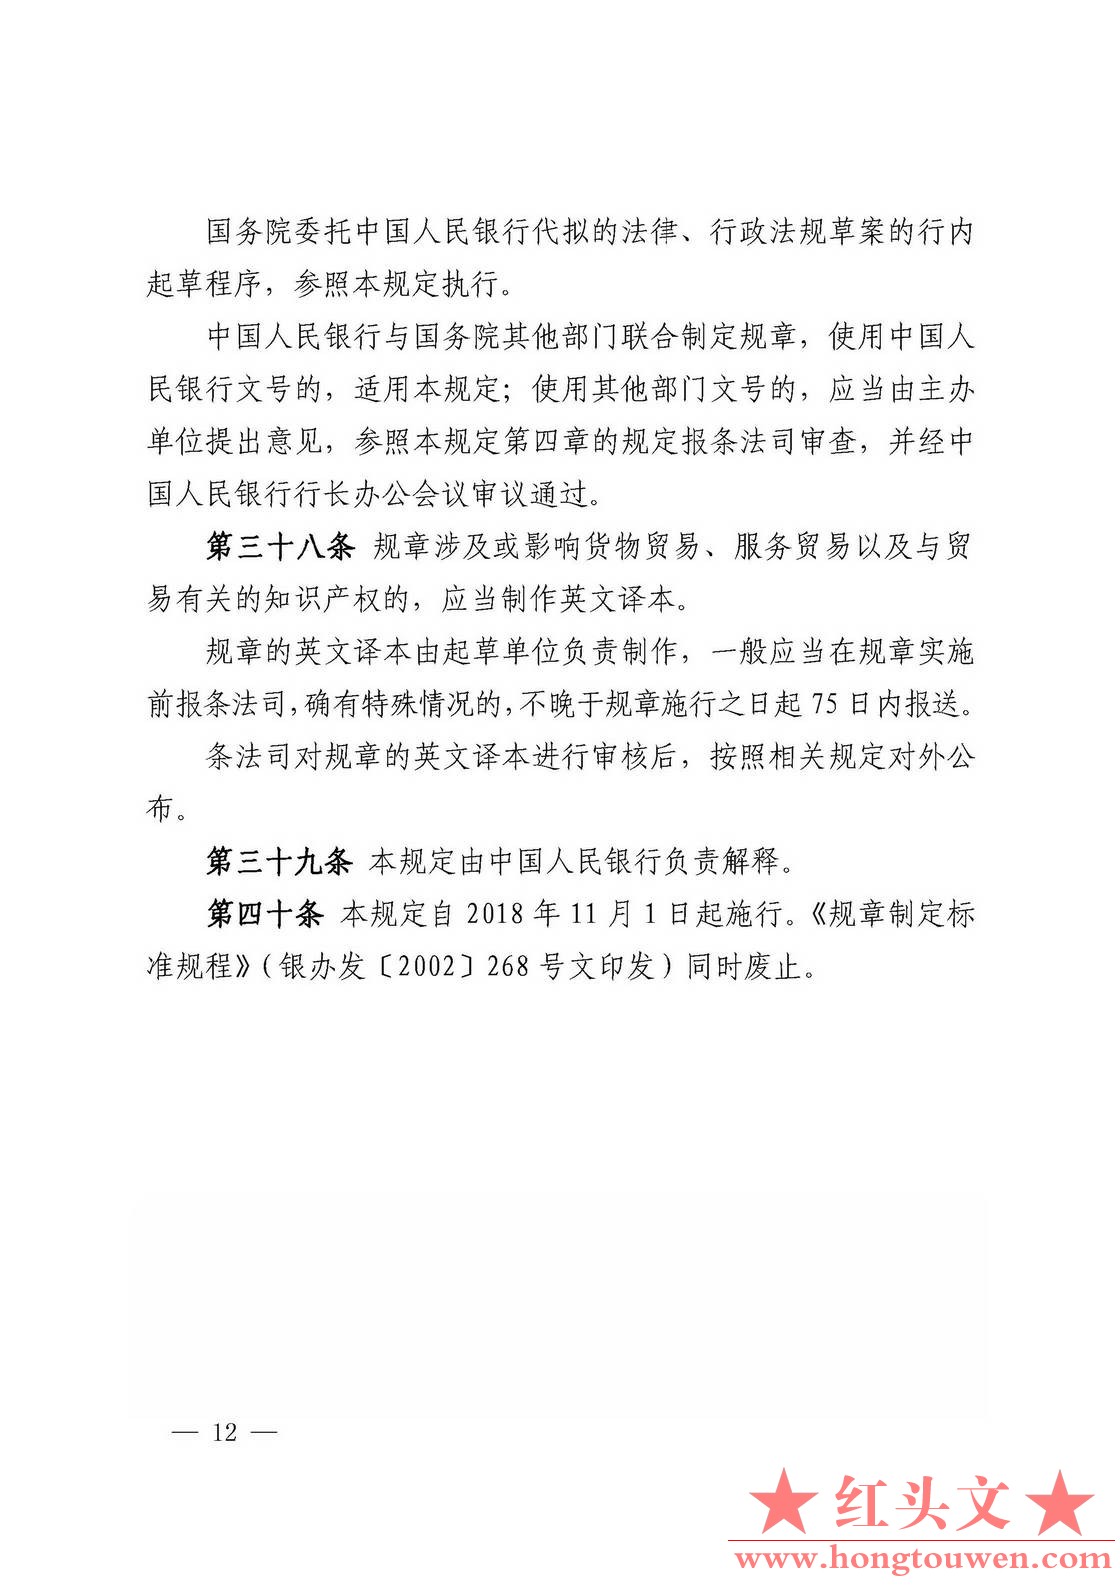 中国人民银行令[2018]3号-中国人民银行规章制定程序与管理规定_页面_12.jpg.jpg